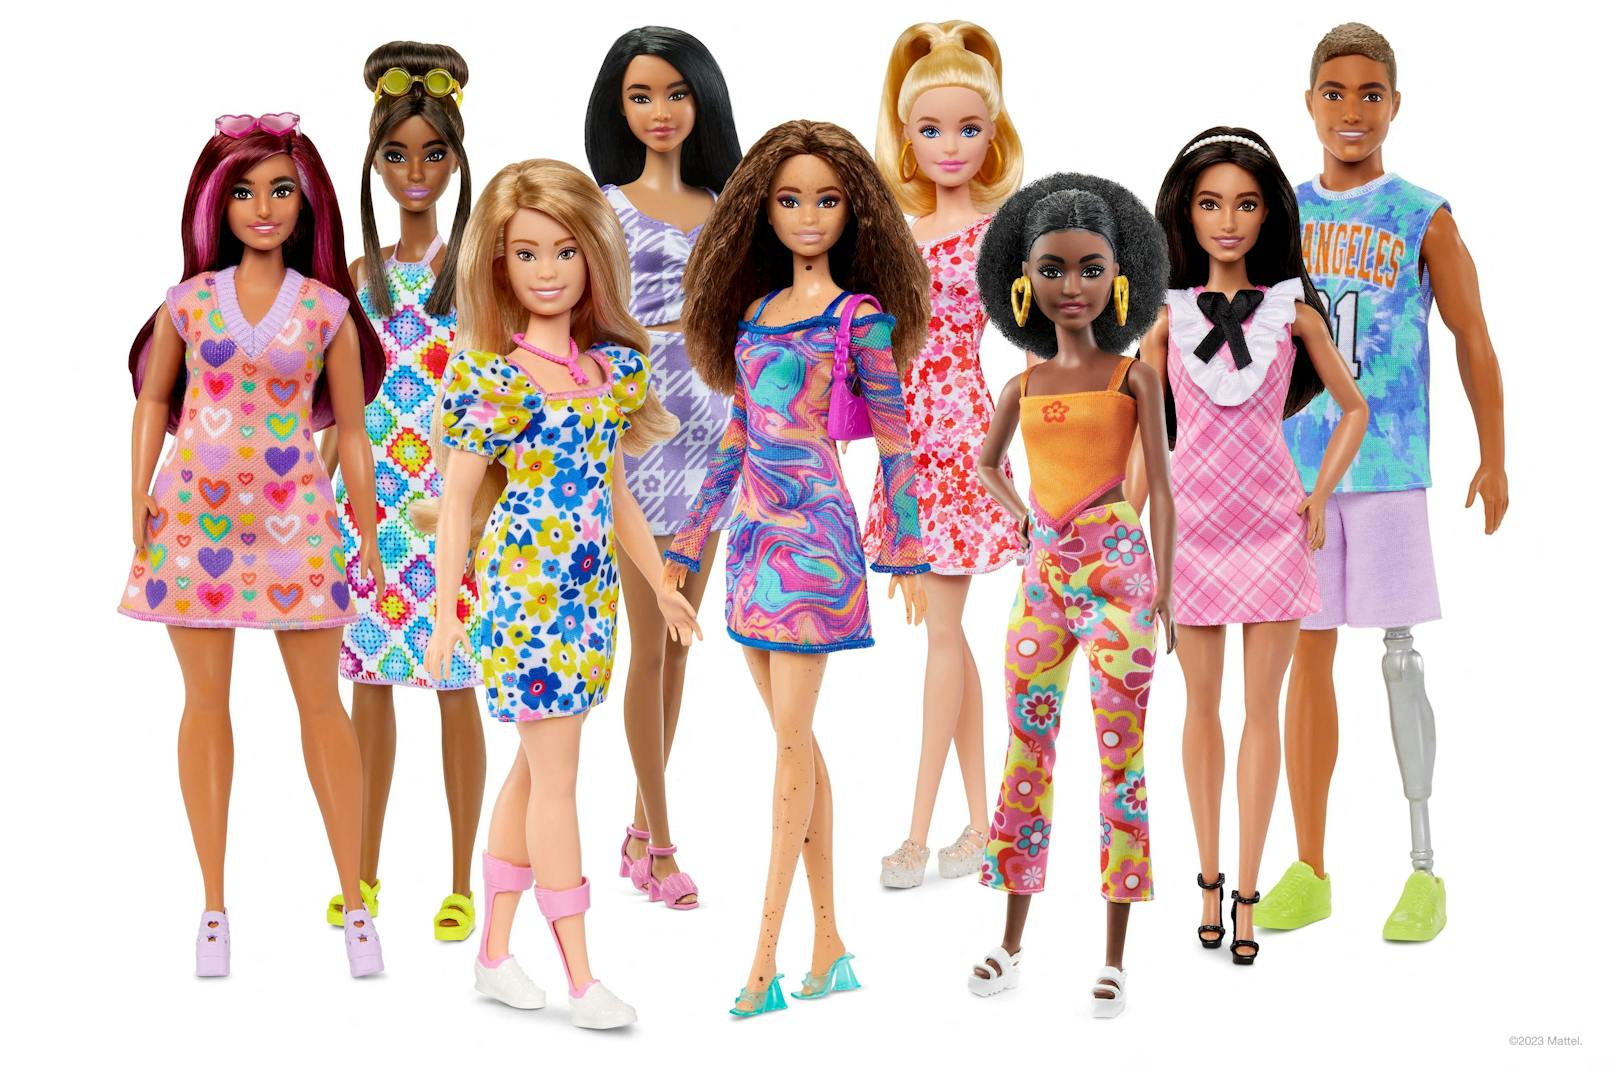 Mattel zufolge gibt es inzwischen 175 verschiedene Barbie-Puppen – das sei das "inklusivste" Puppensortiment auf dem Markt.